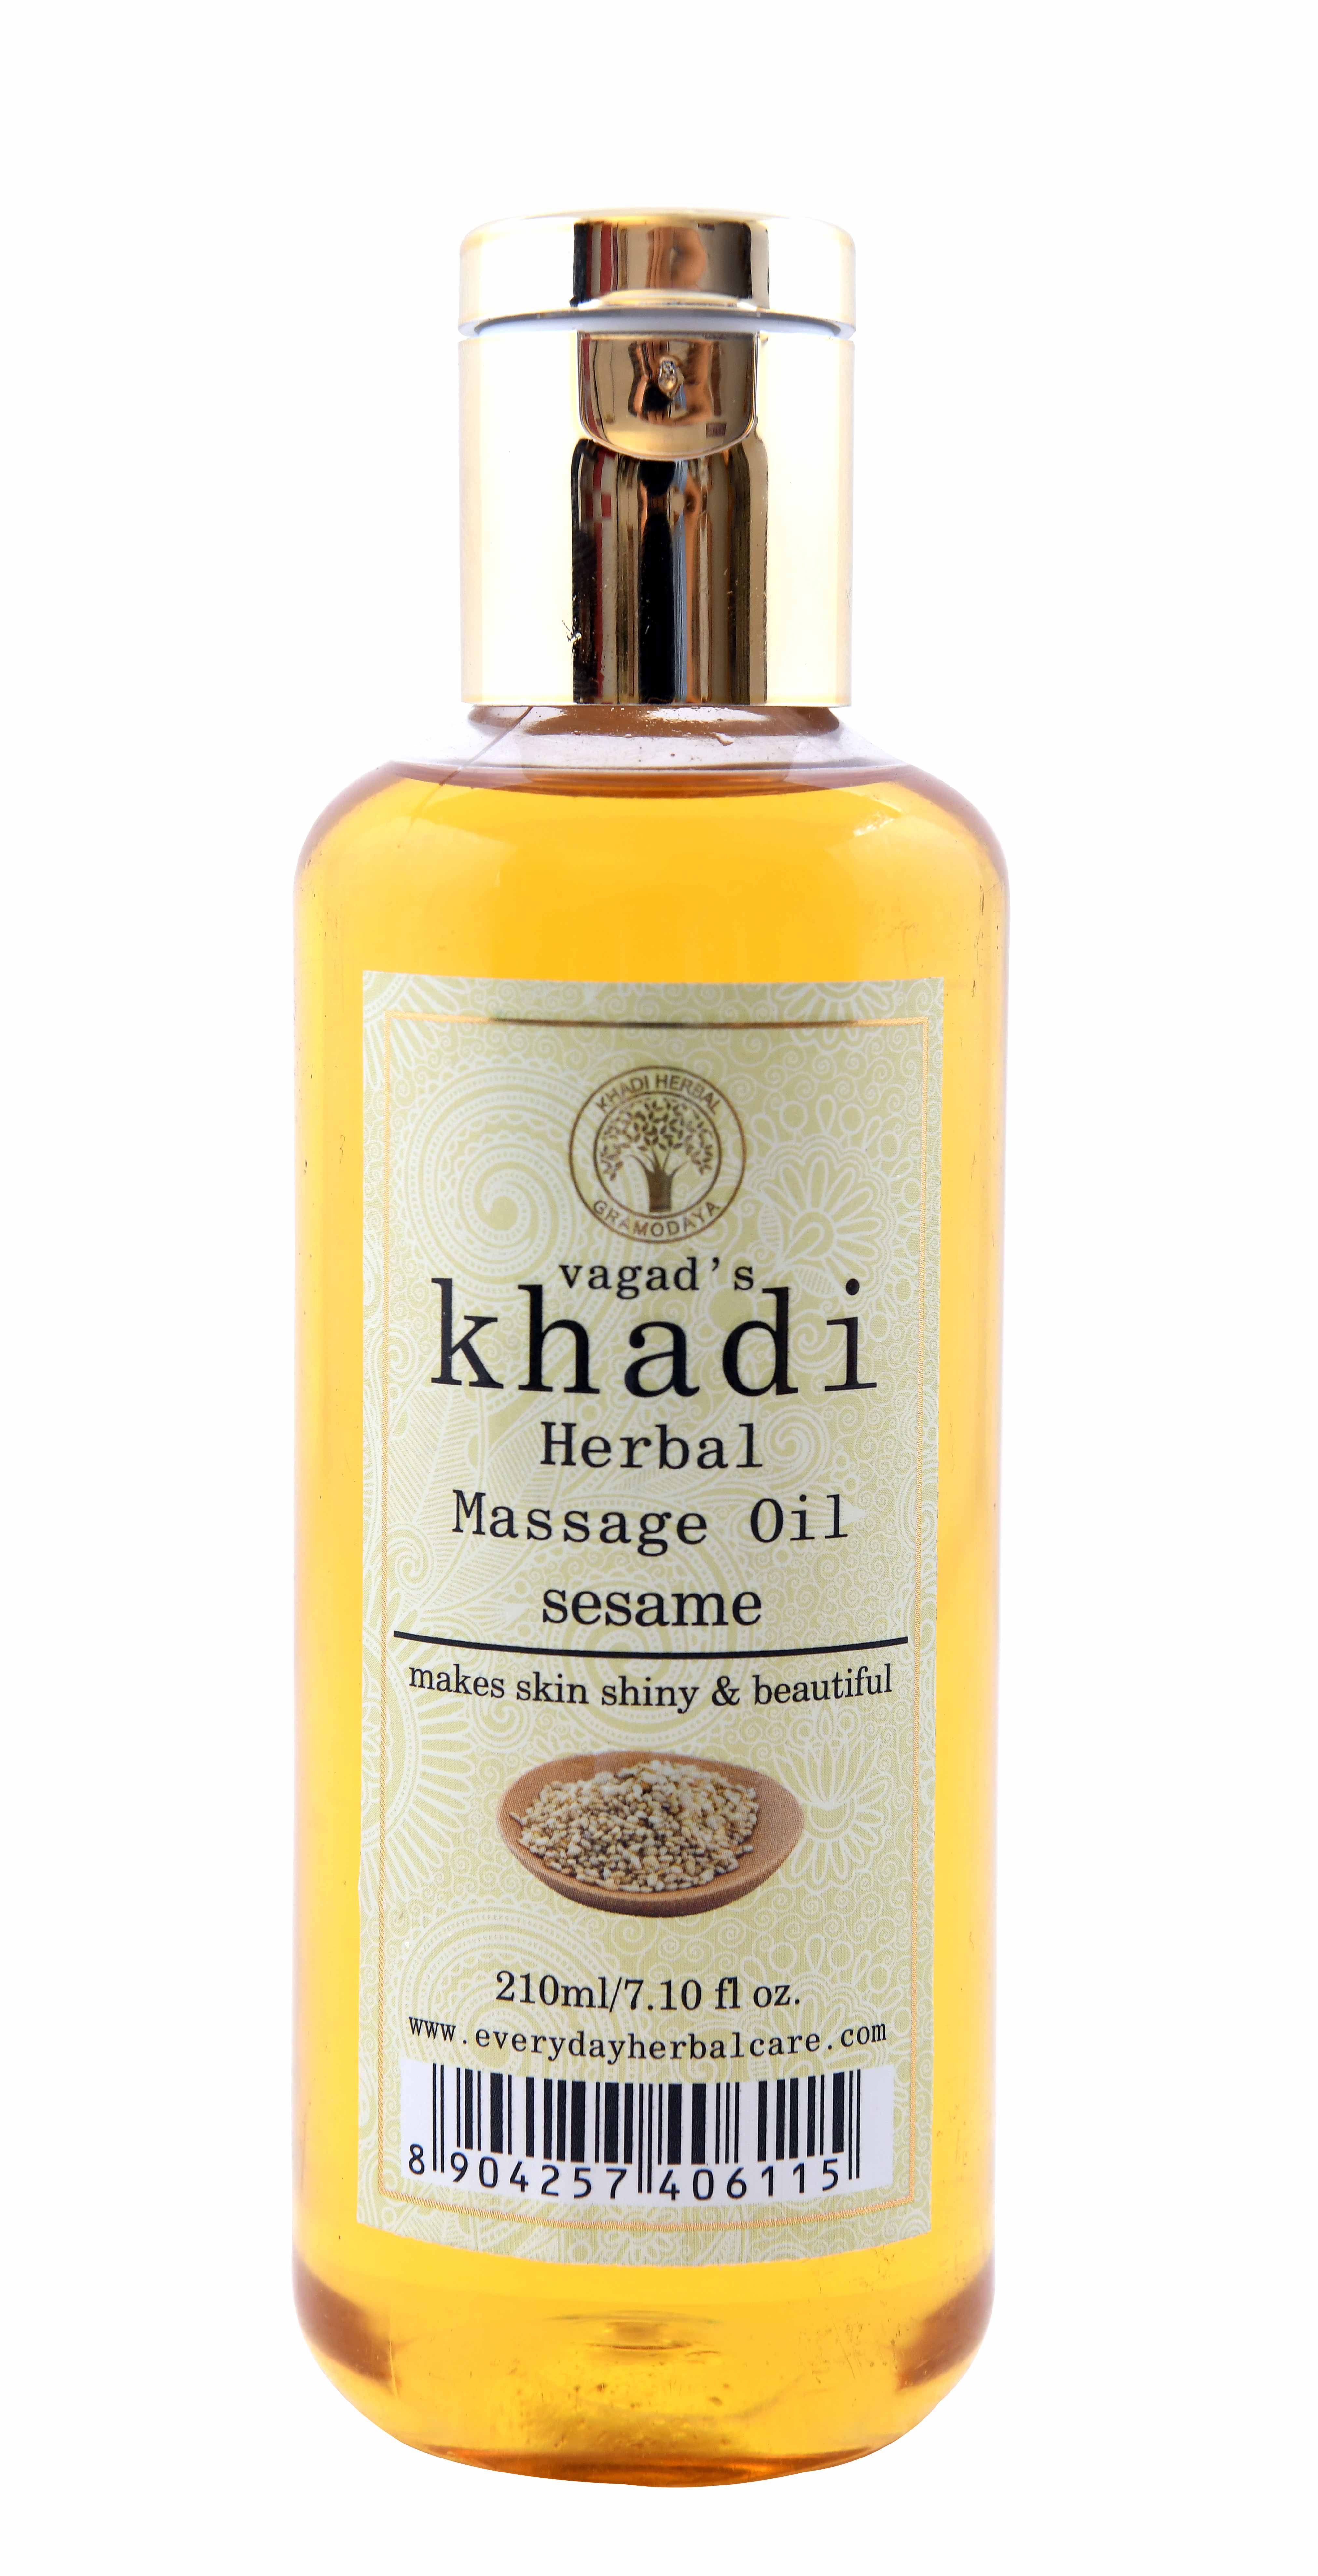 Vagad's Khadi Sesame Massage Oil